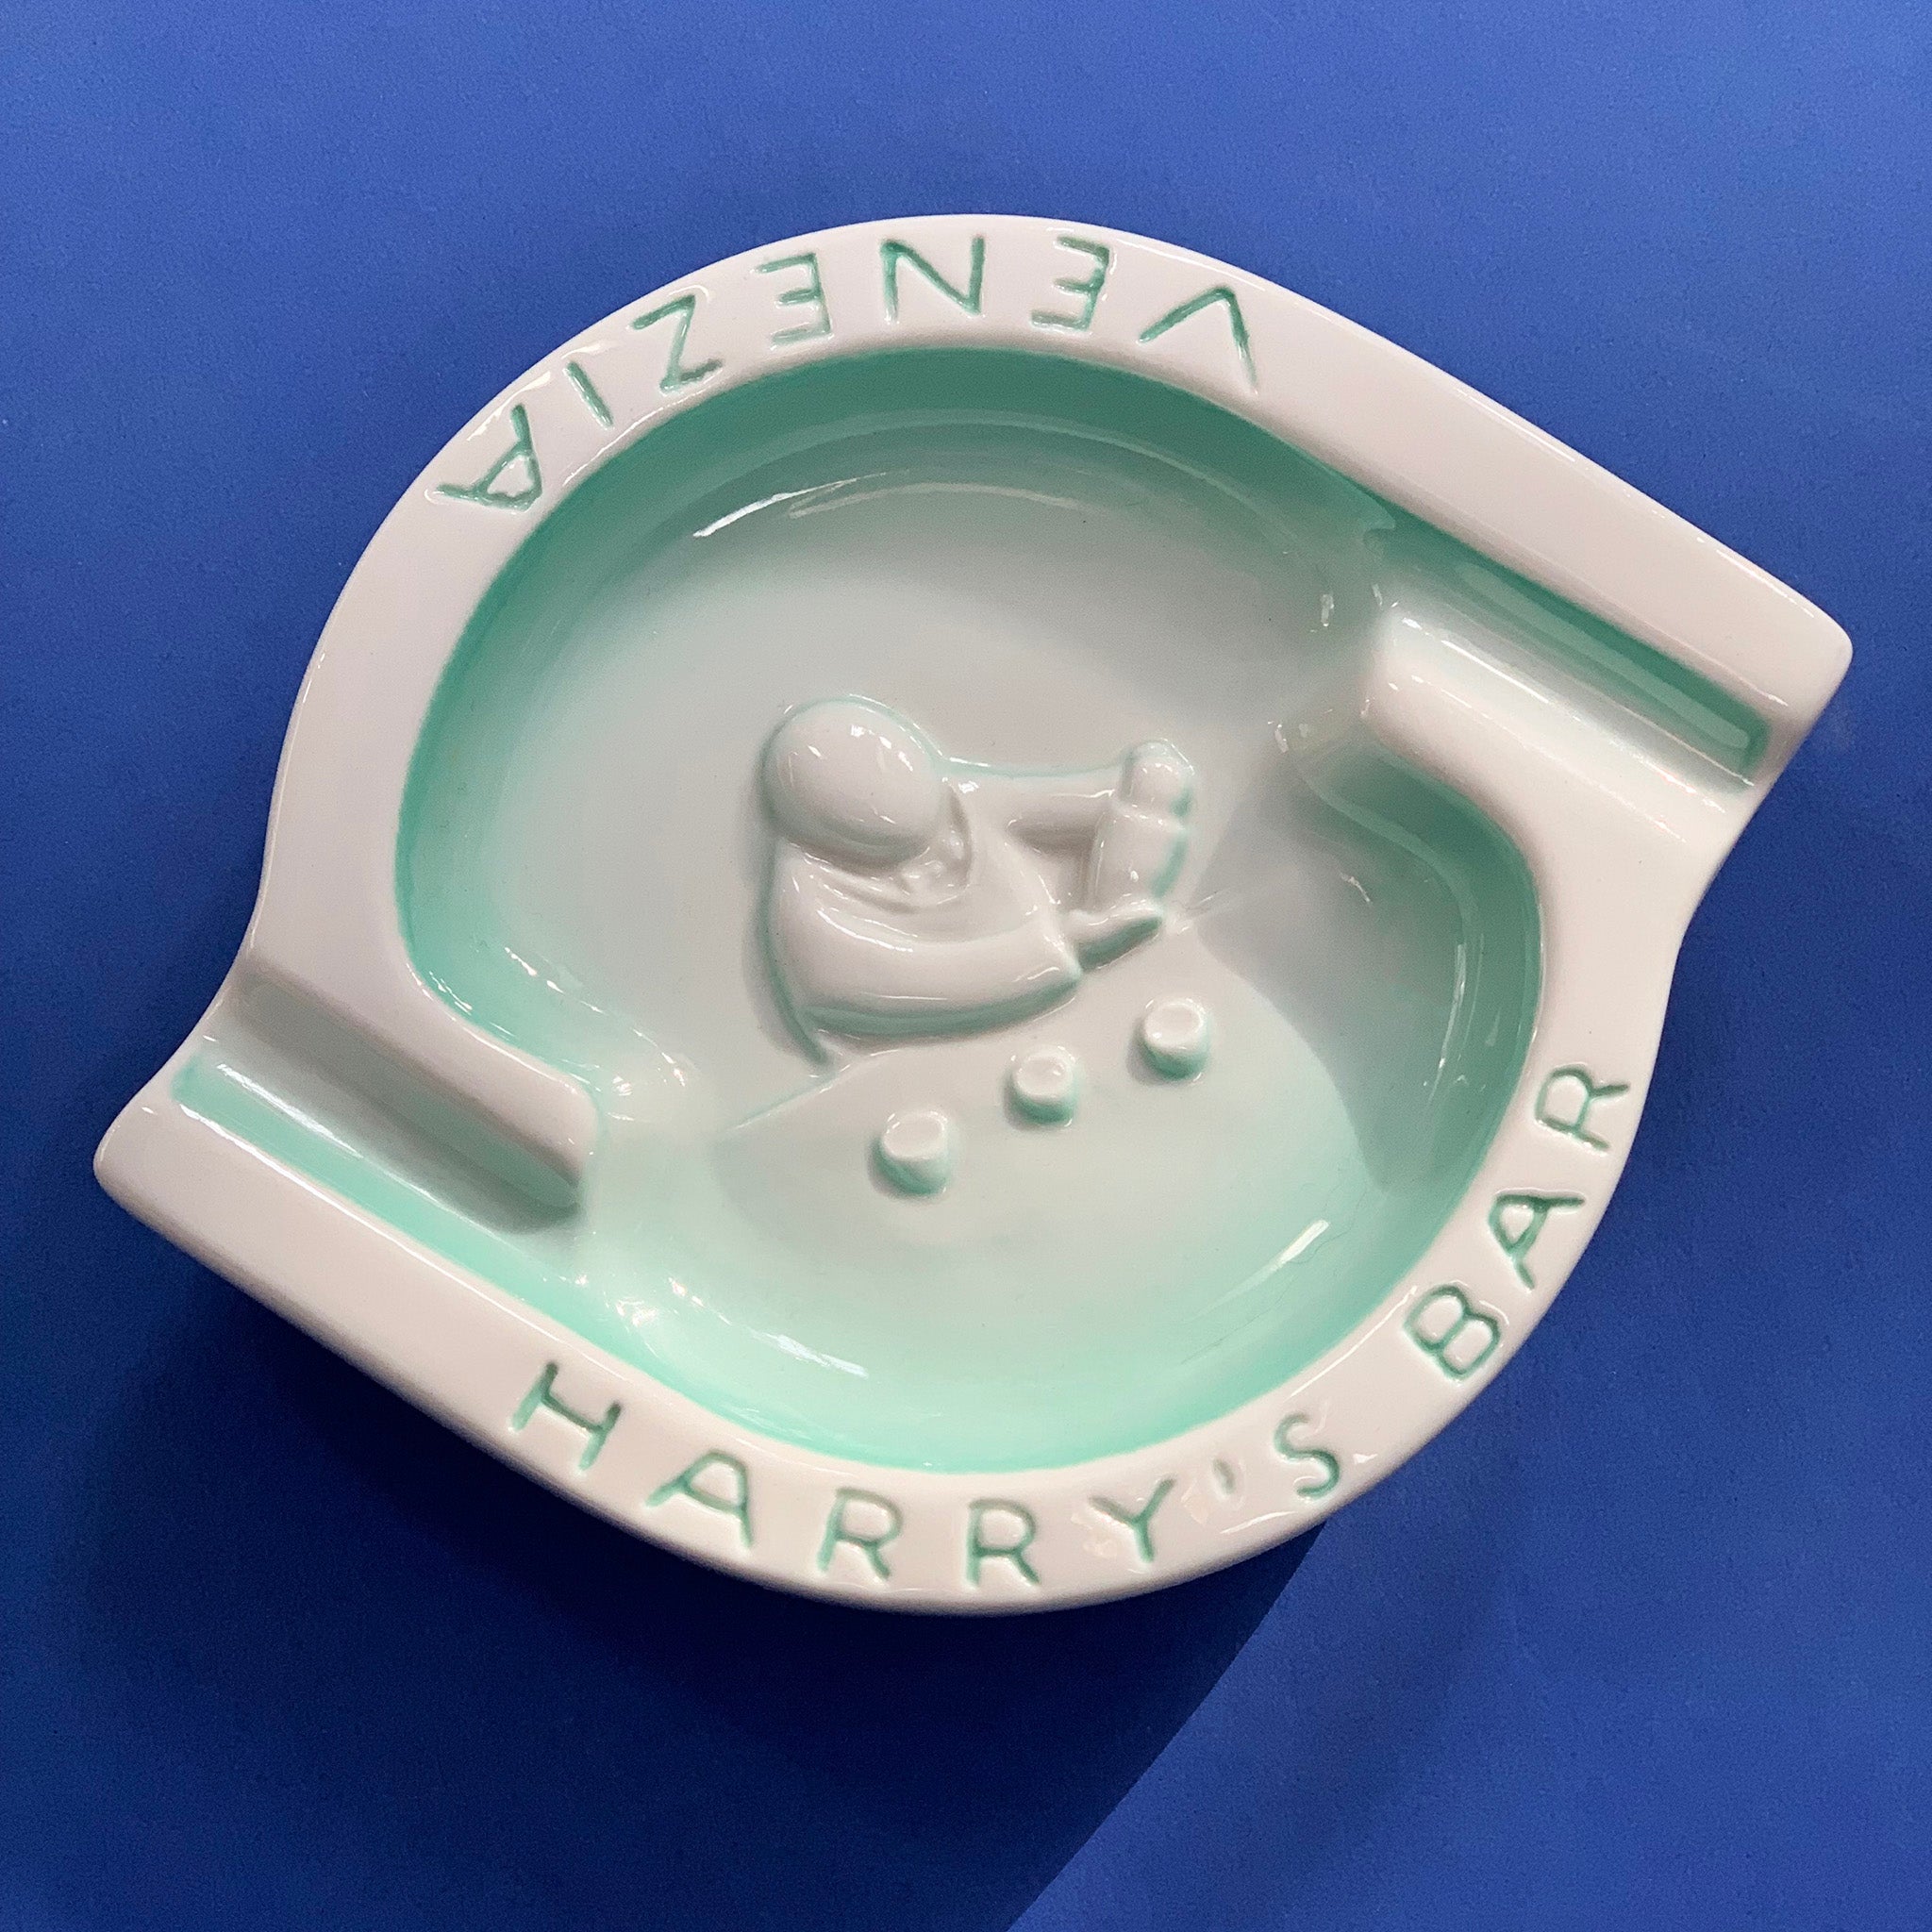 Harry's Bar Venice Italy Teal Ceramic Ashtray